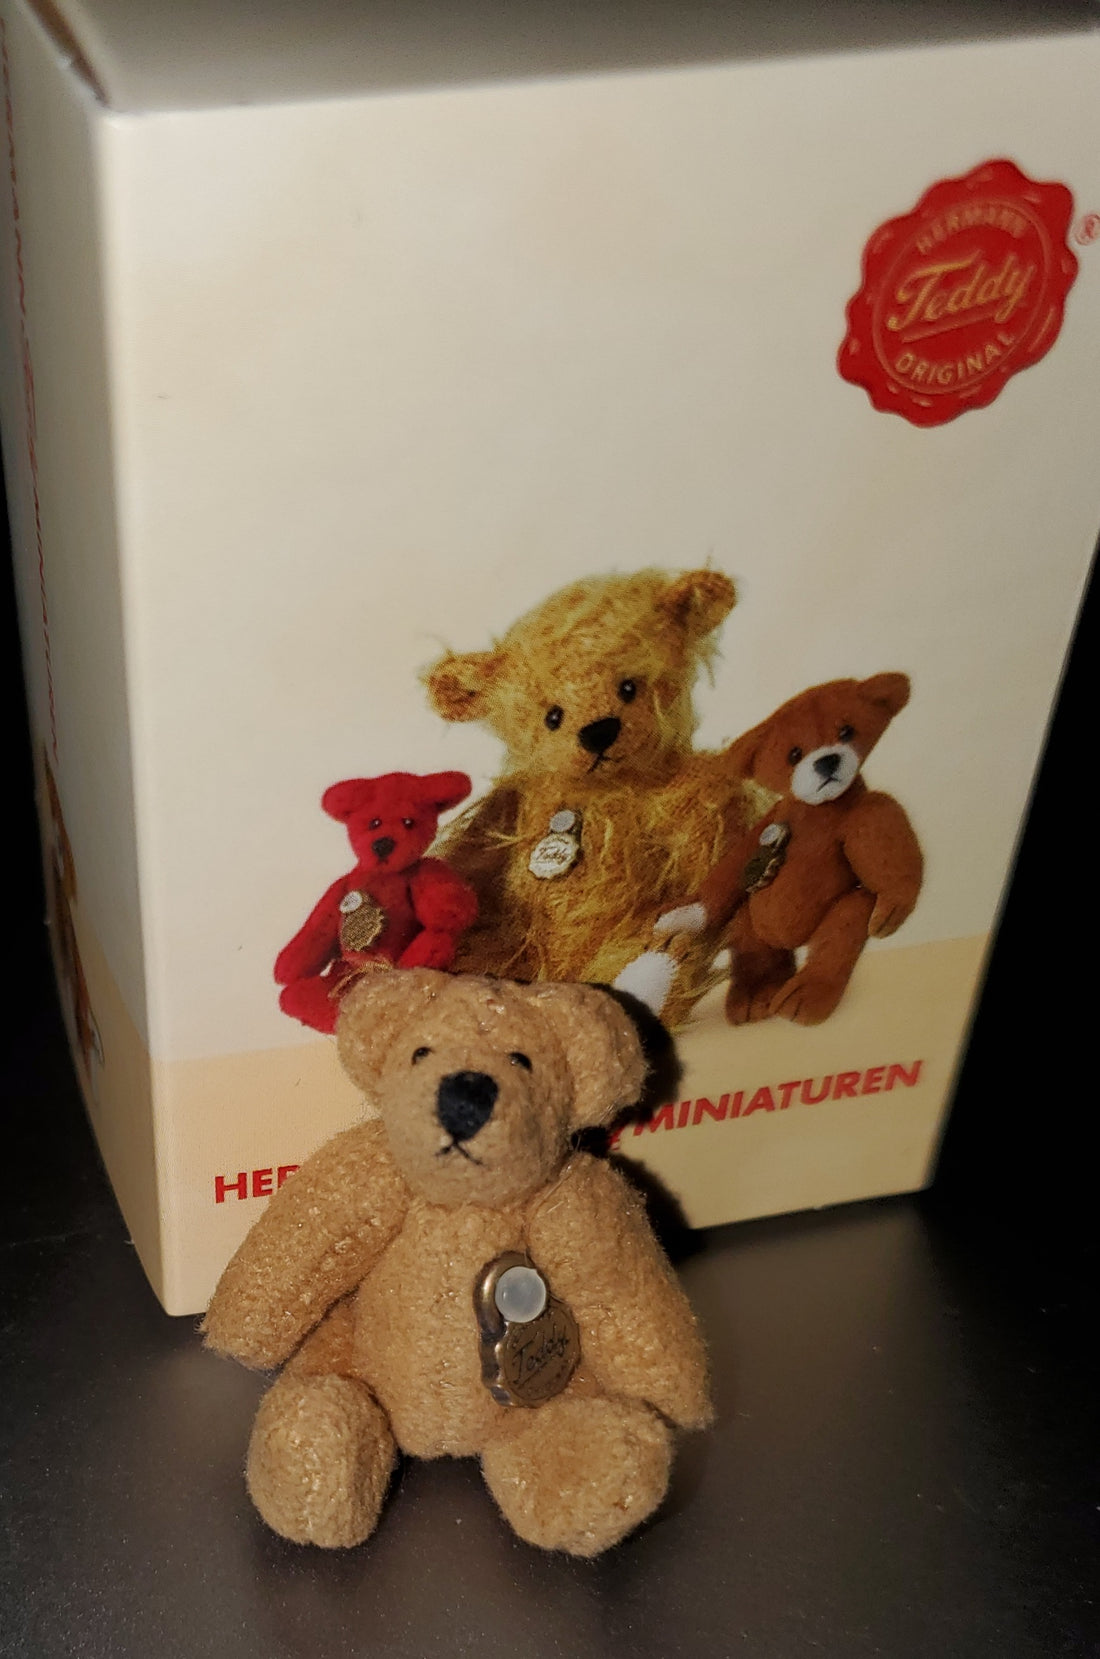 Golden Miniature 1.6" Teddy Bear by Hermann of Germany